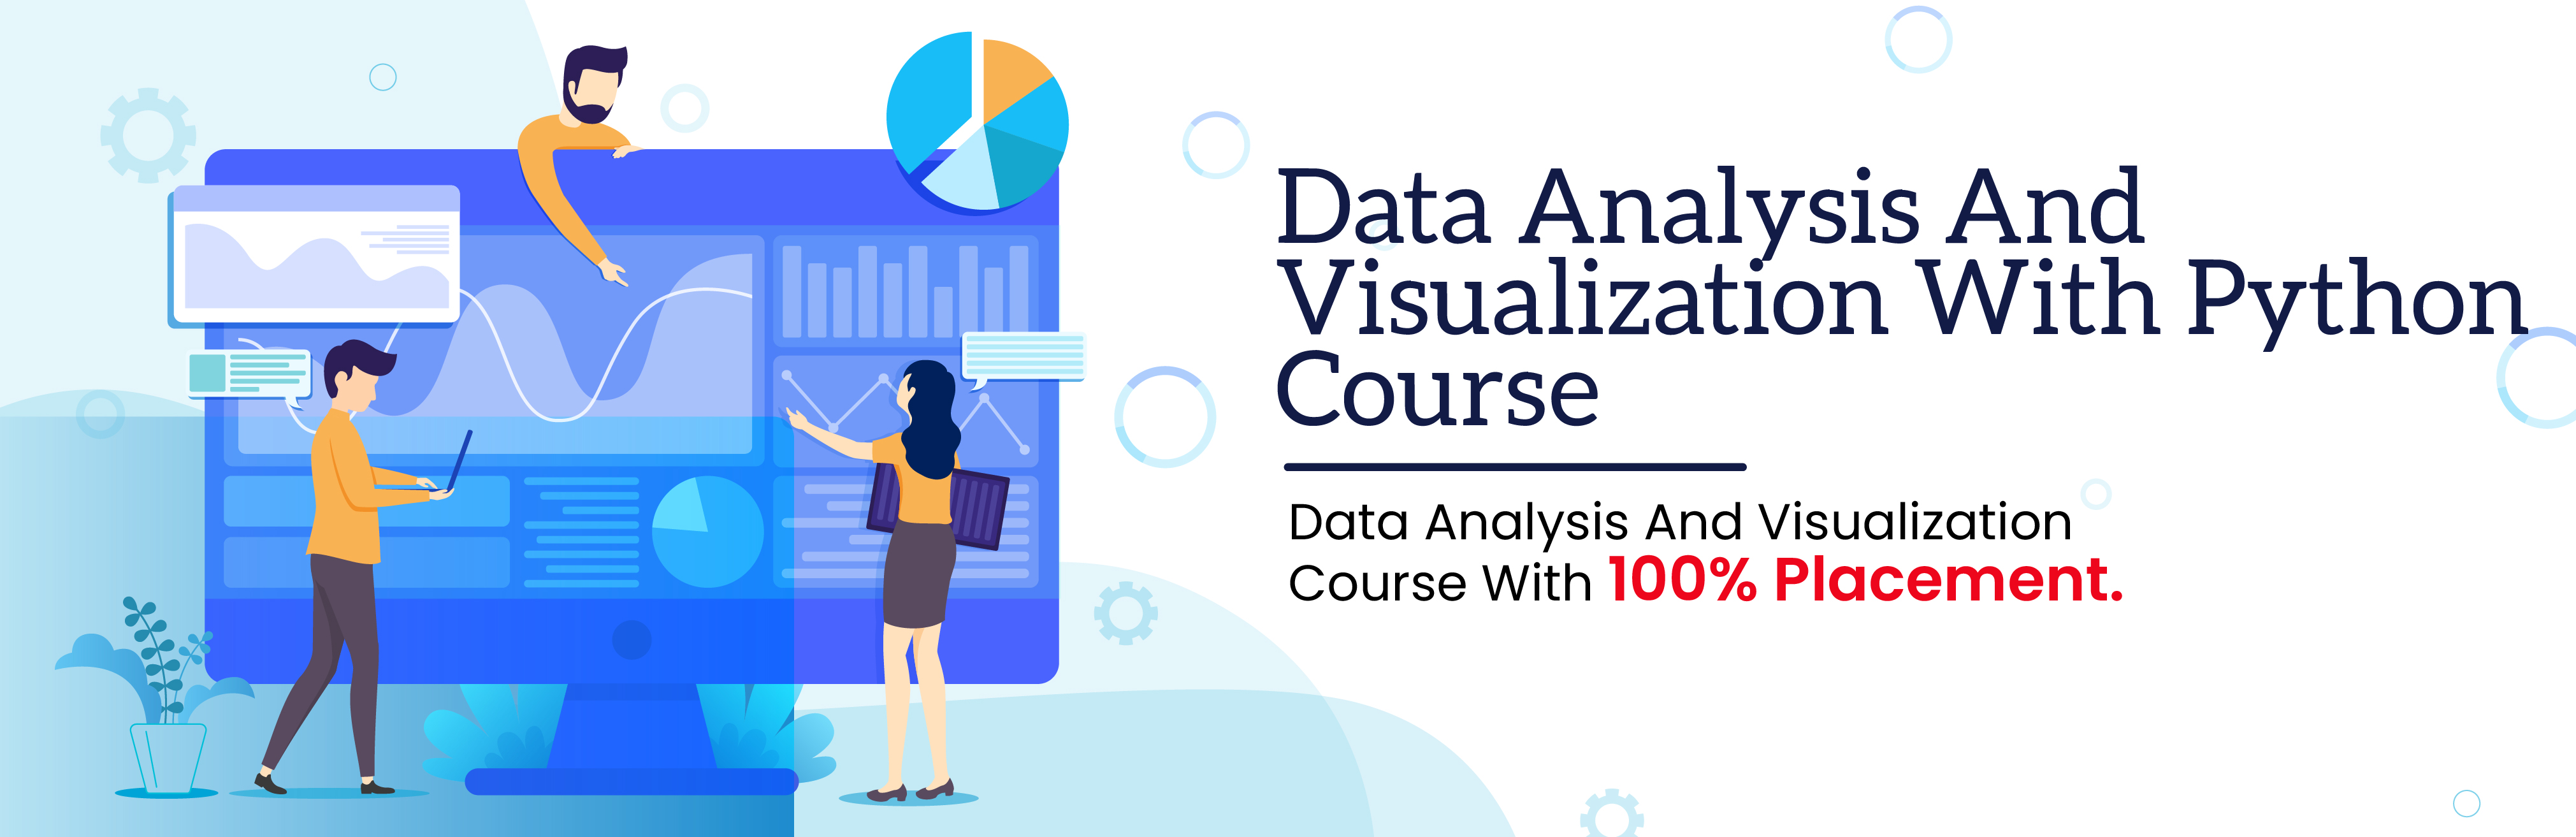 DataAnalysis & Visualization